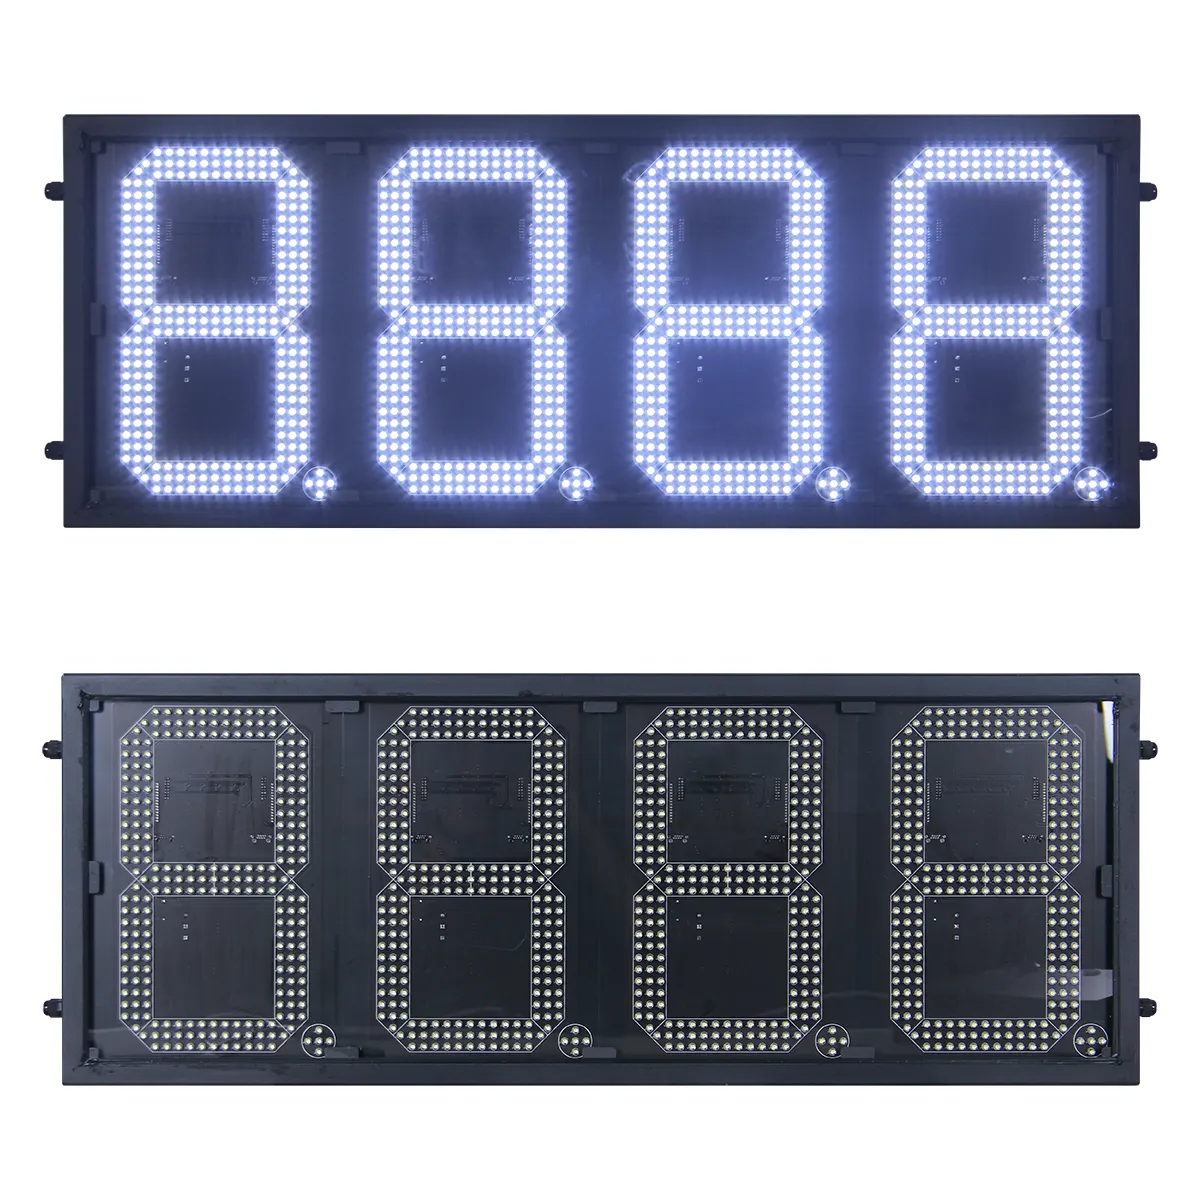 Segnali di prezzo del Gas da 10 pollici 8888LED 7 segmenti IP65 uso esterno LED prezzo della stazione di servizio segni digitali